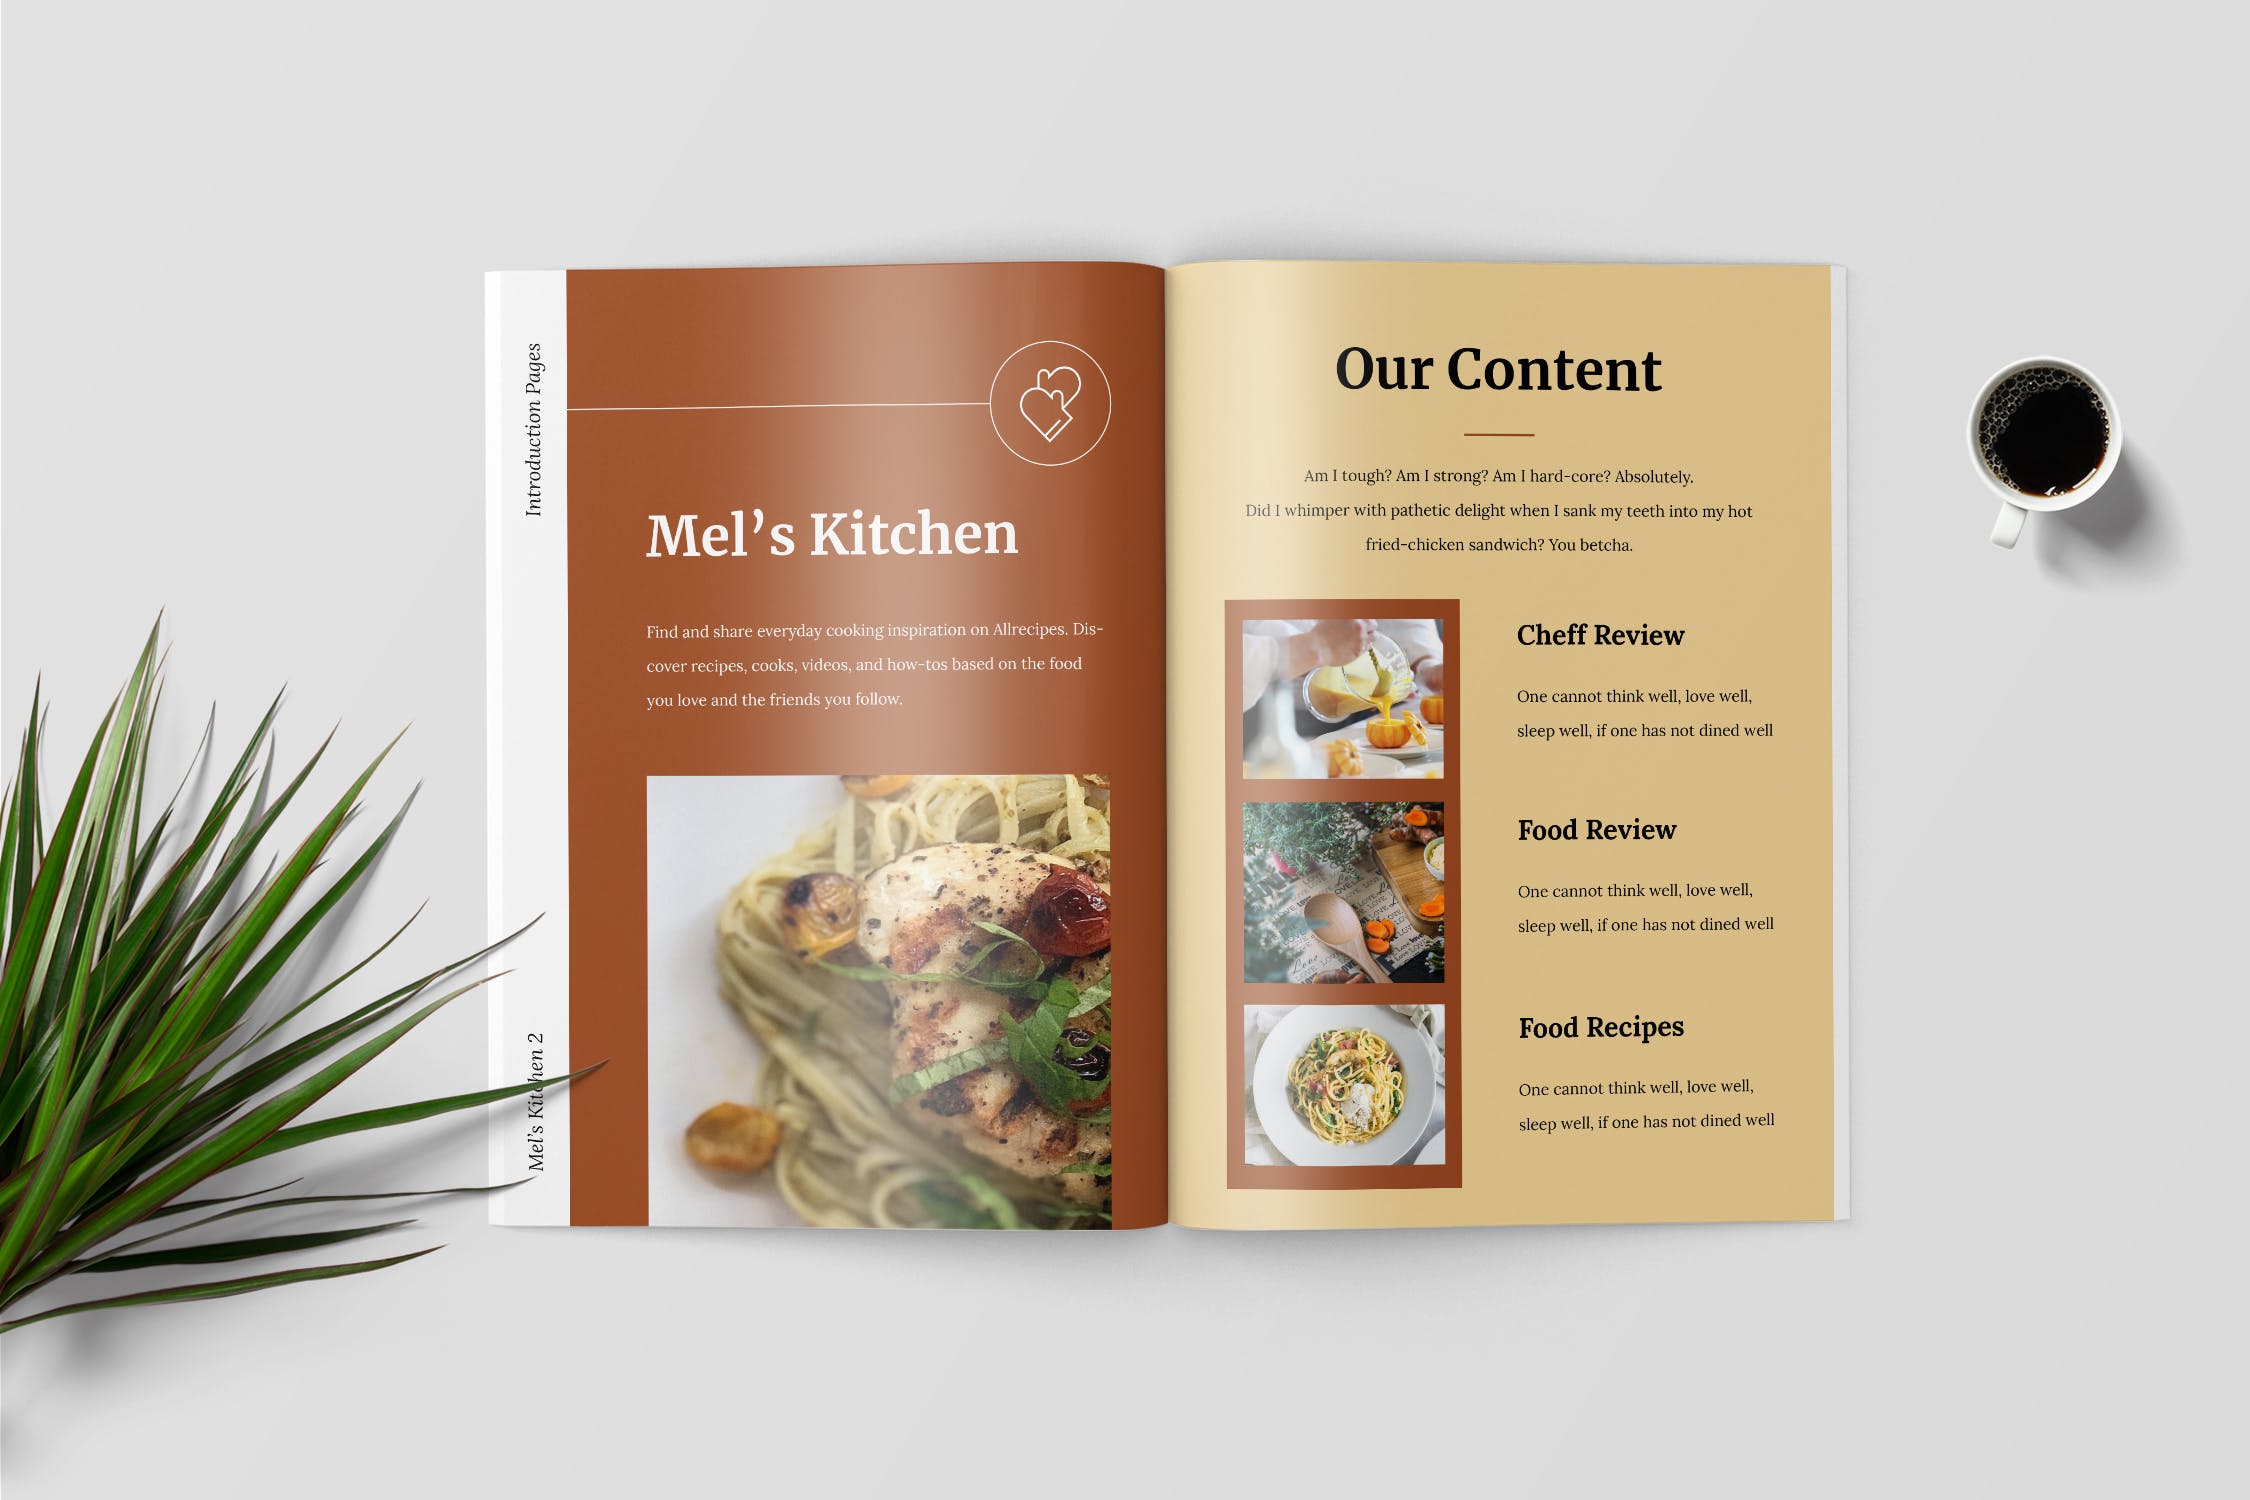 食谱美食主题杂志排版设计制作模板 Recipe Magazine Template插图(2)